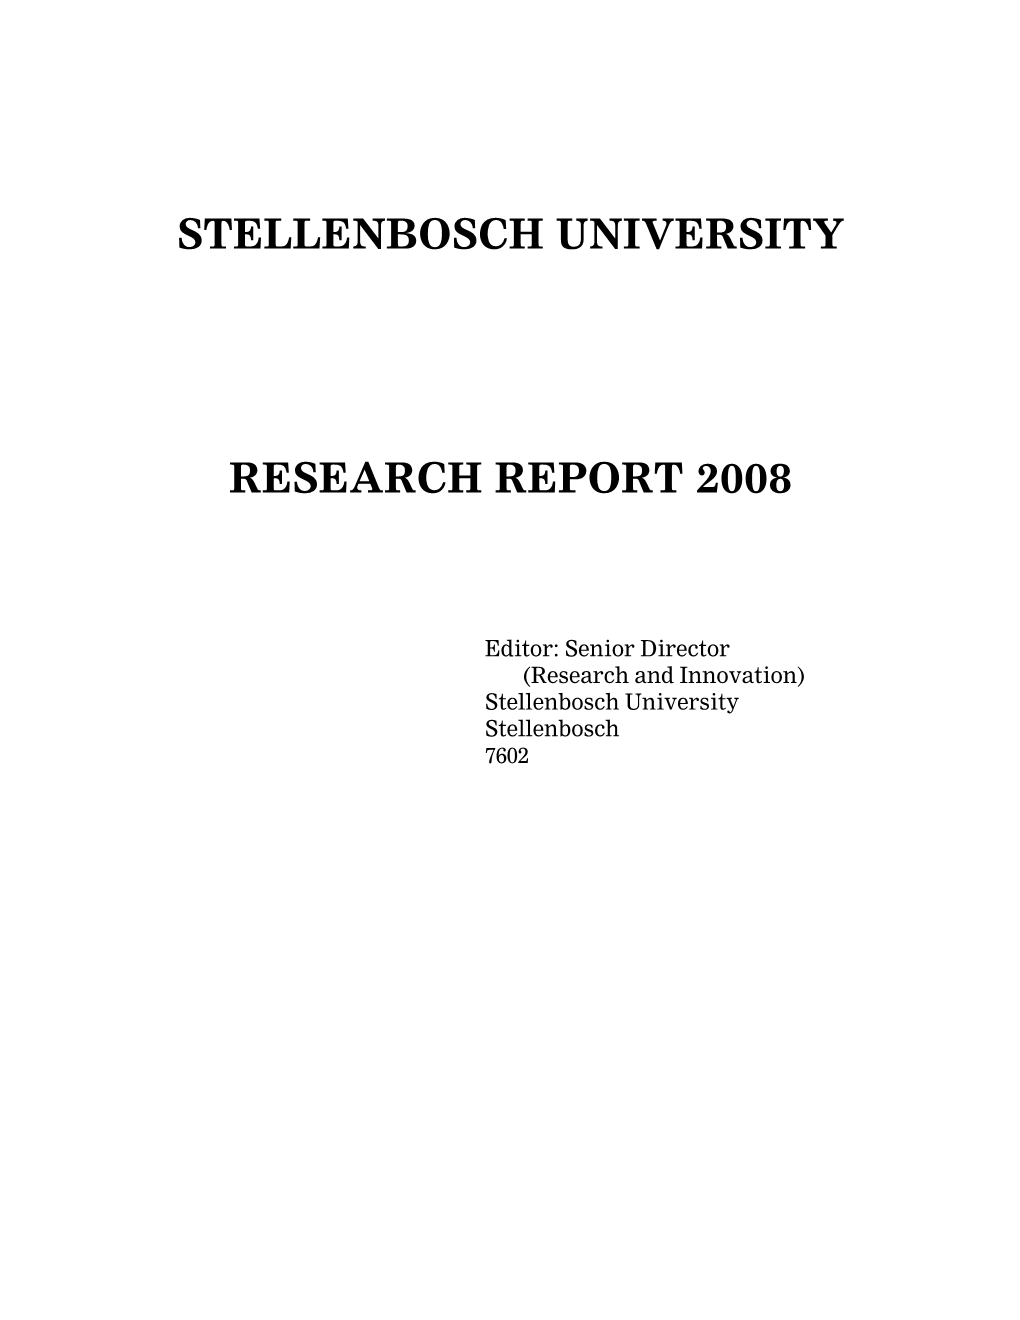 Stellenbosch University Research Report 2008